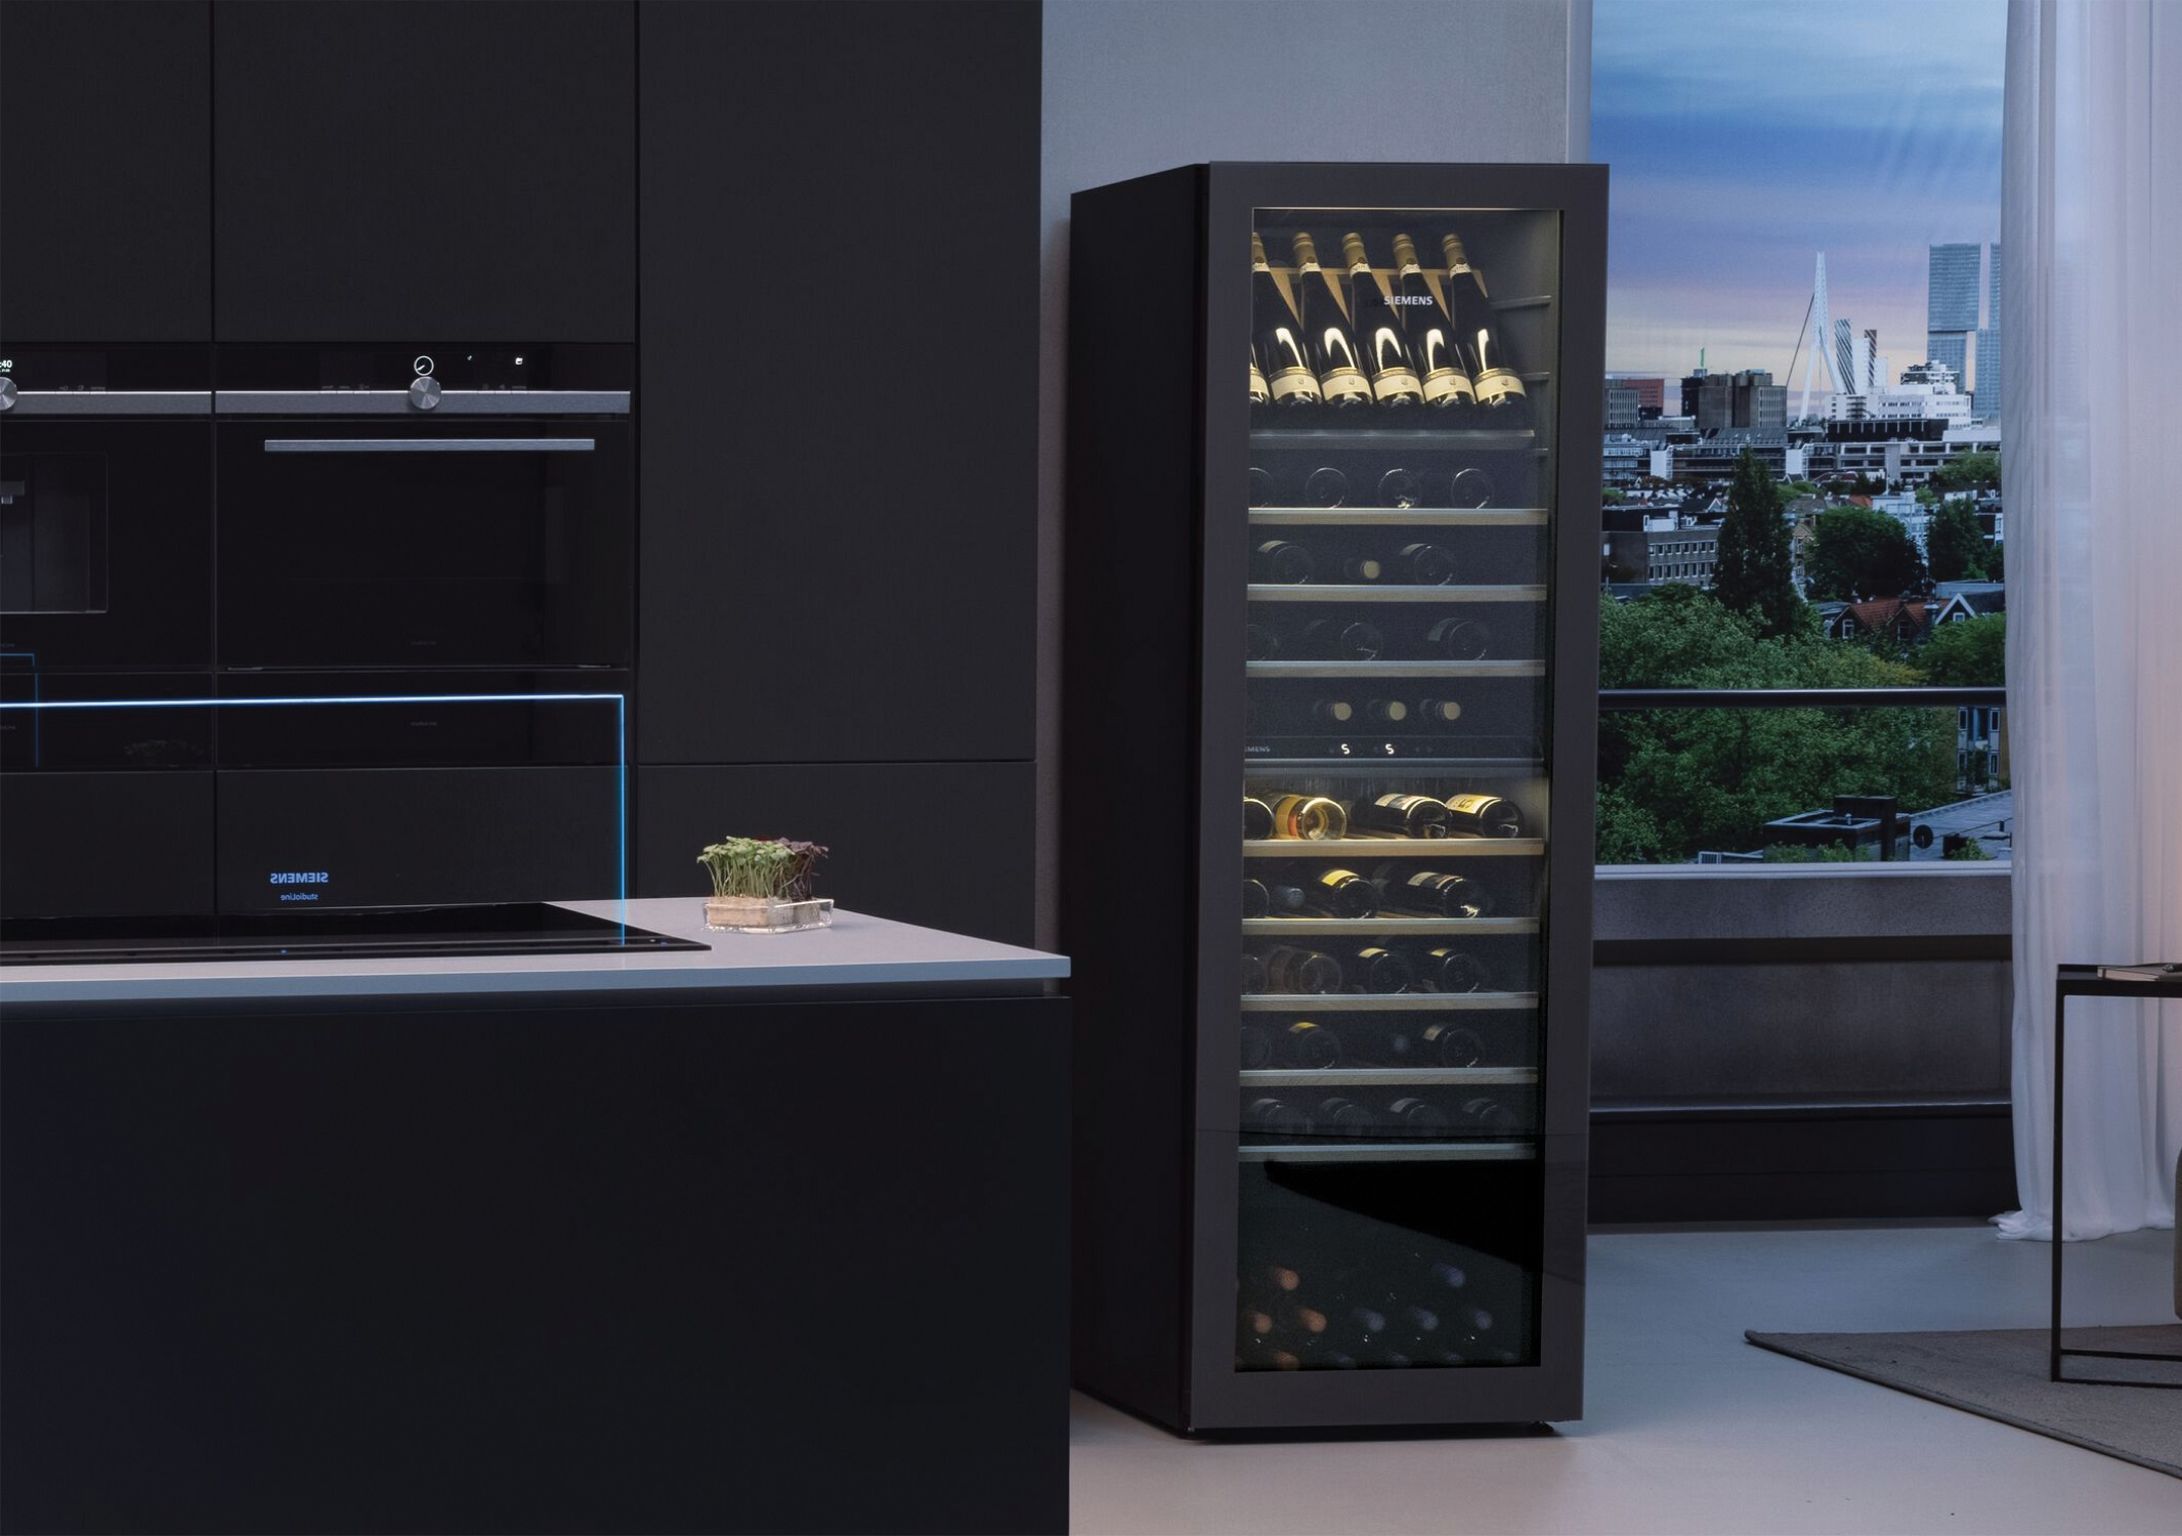 Siemens Freestanding Wine Cooler 186cm